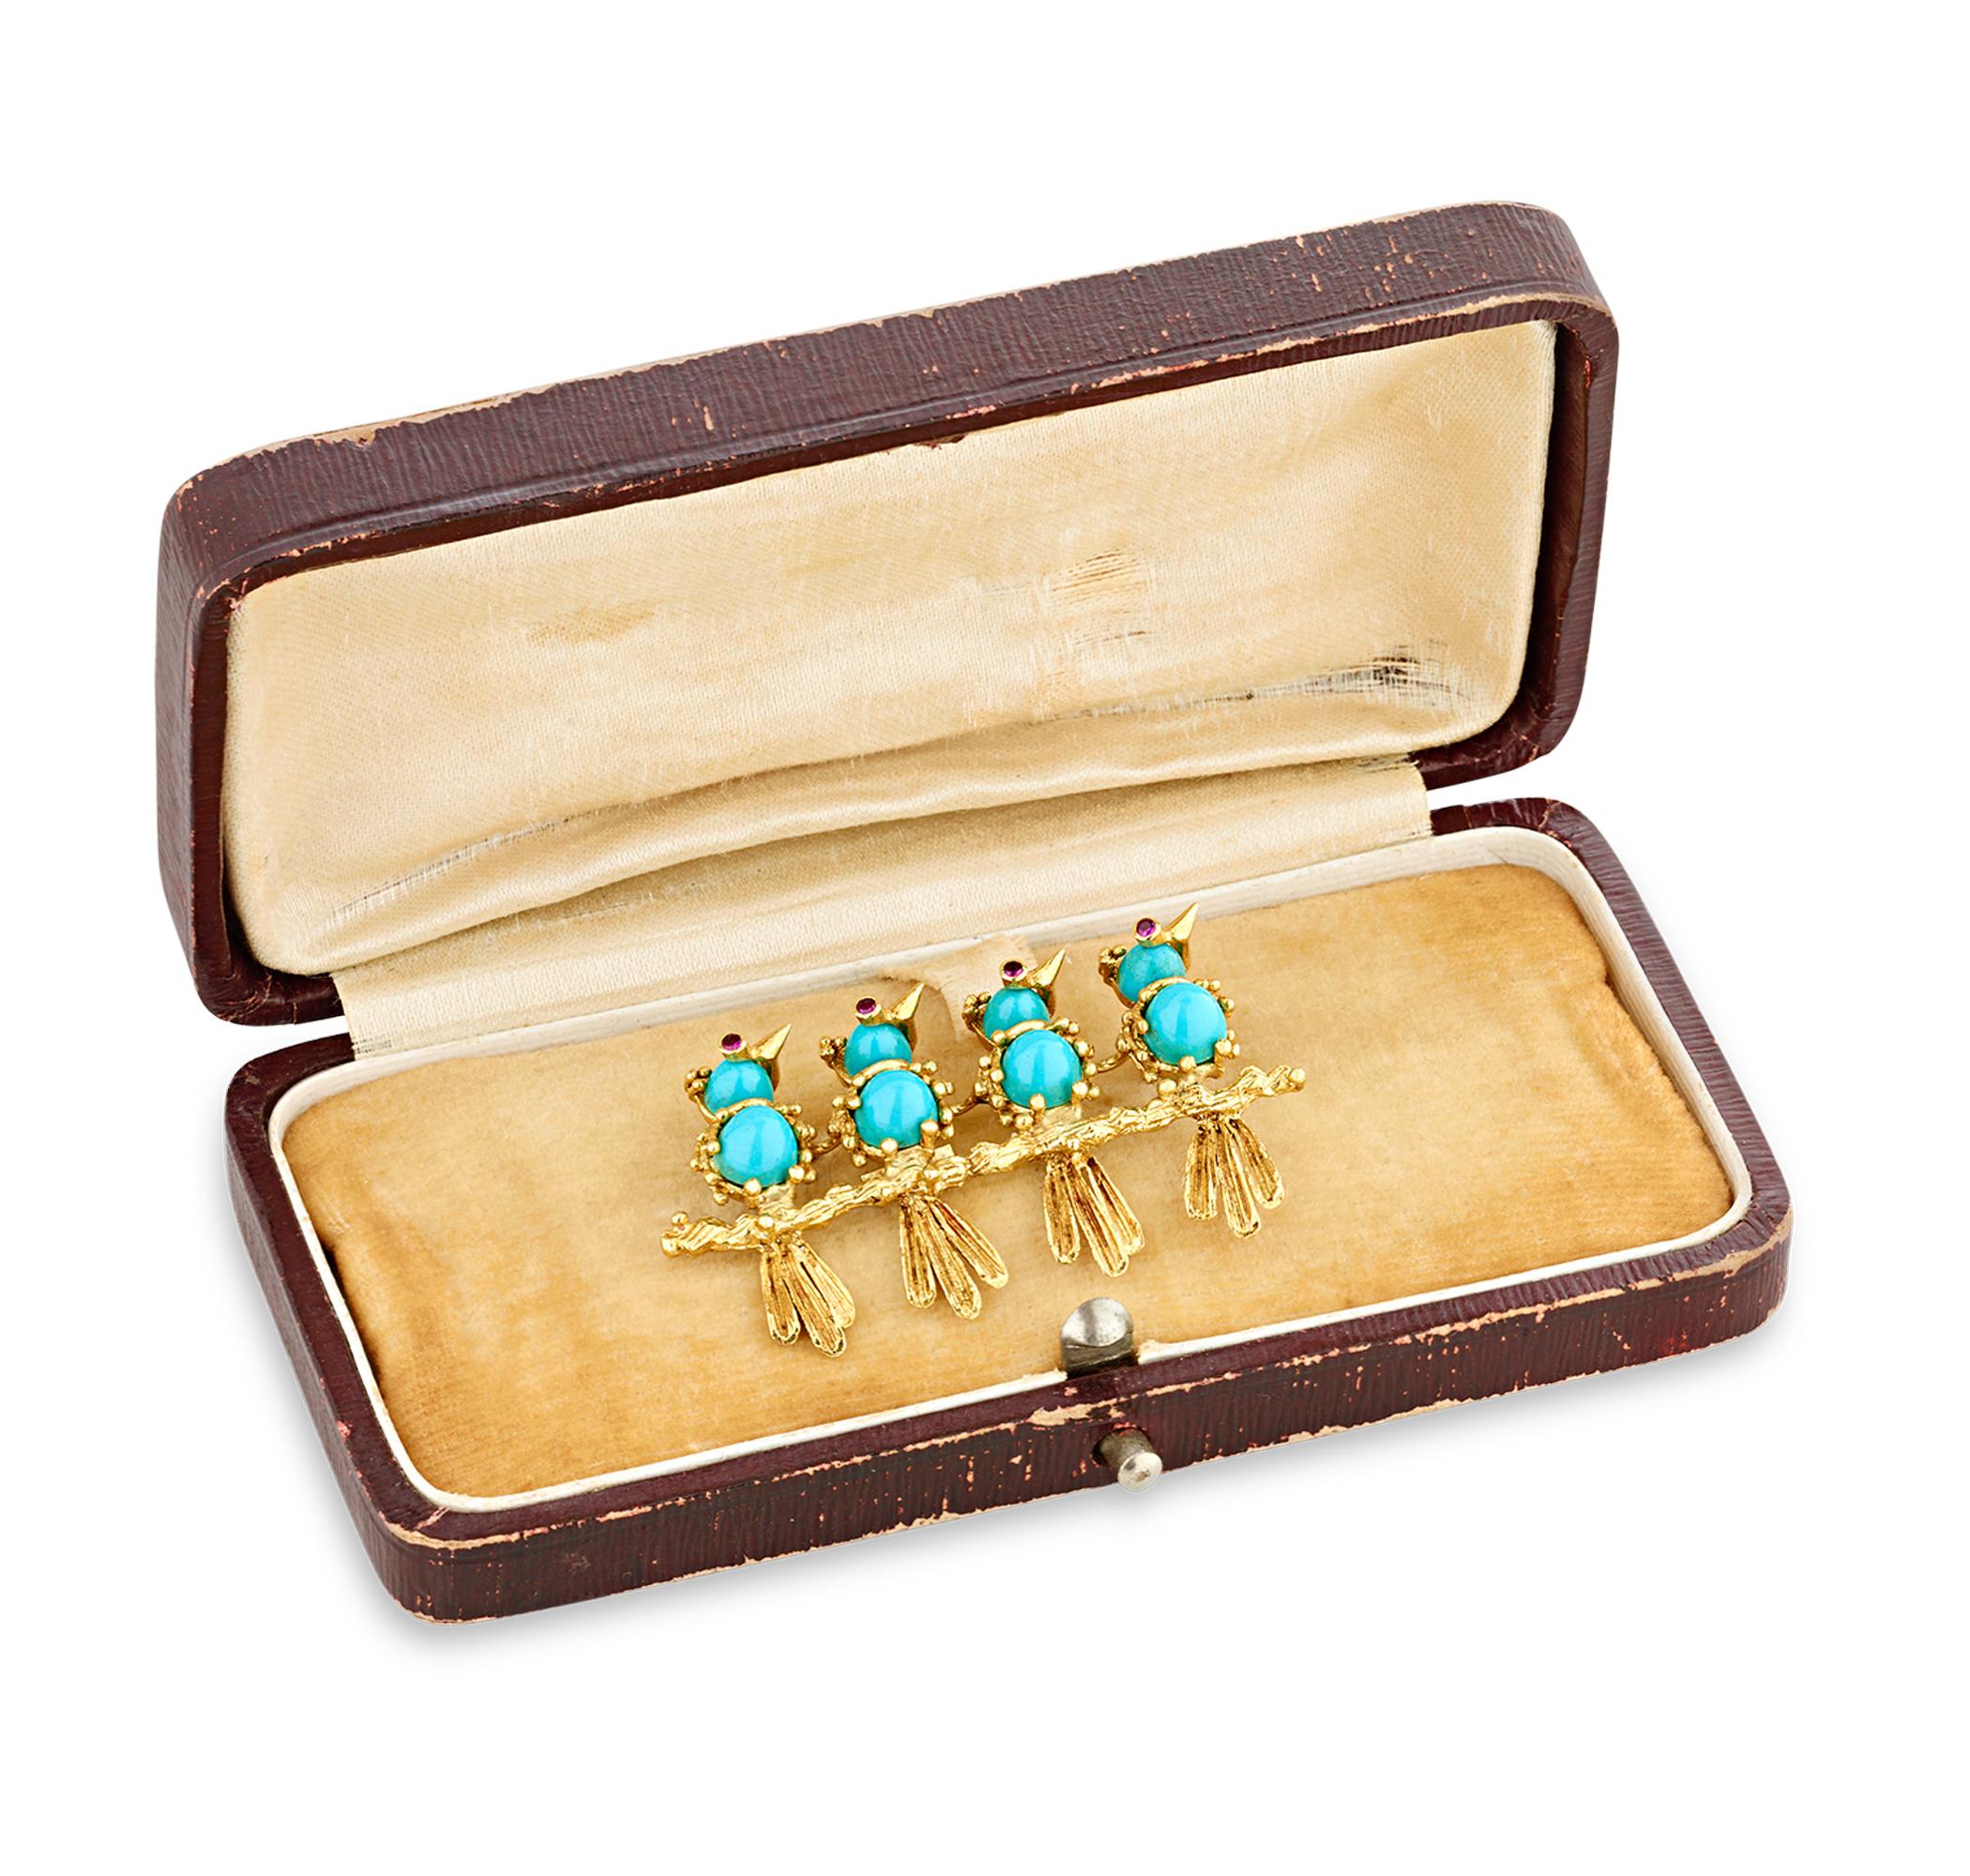 Diese exquisite Brosche von Cartier, einem der bedeutendsten Juweliere der Welt, zeigt ein bezauberndes Tableau von vier türkisfarbenen Vögeln, die auf einem goldenen Branch sitzen. Die Vögel sind mit Gold verziert, mit detaillierten Schnäbeln,